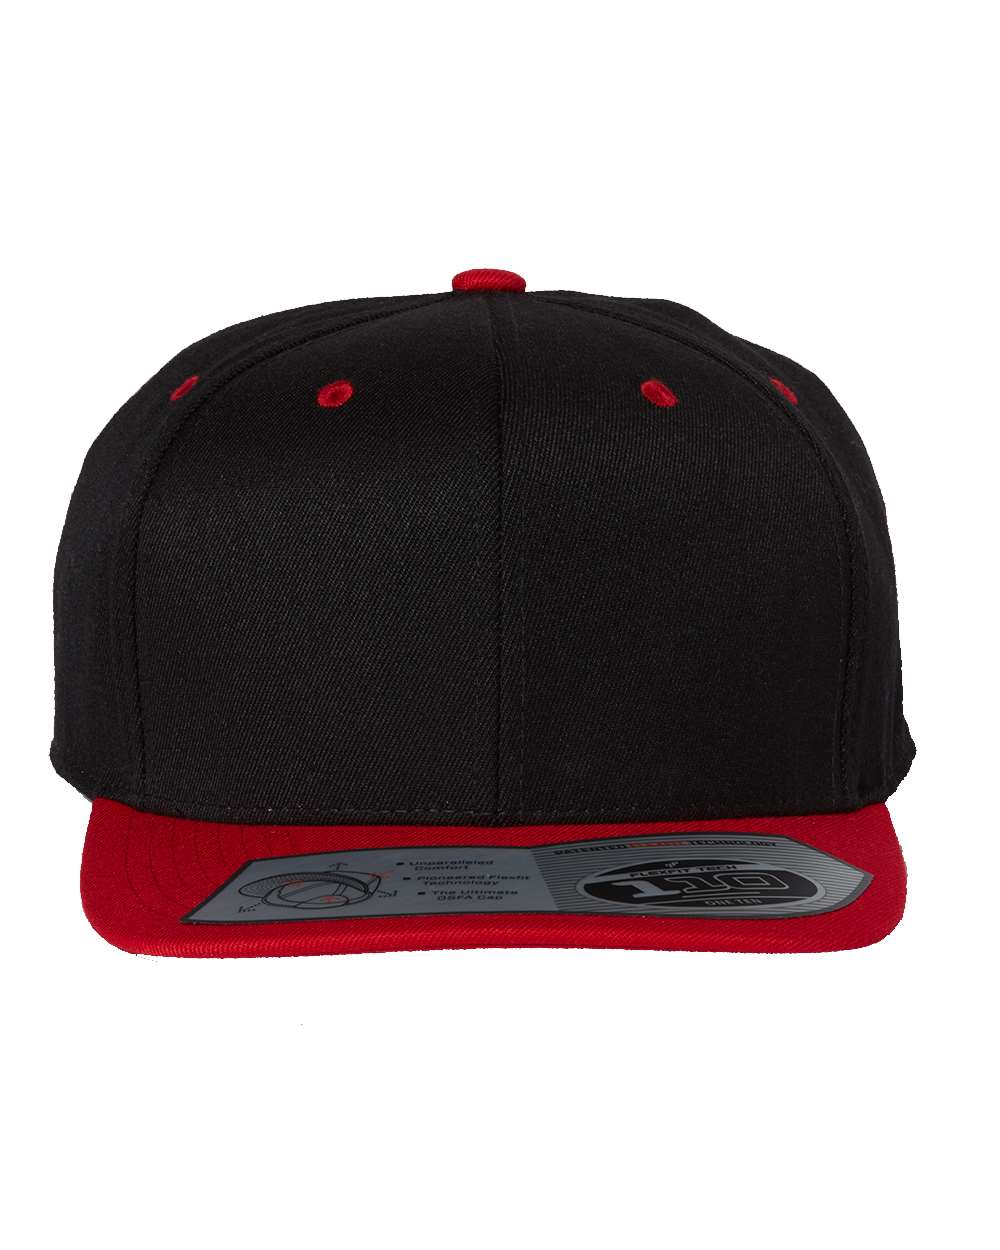 Flexfit 110® Flat Bill Snapback Cap 110F #color_Black/ Red